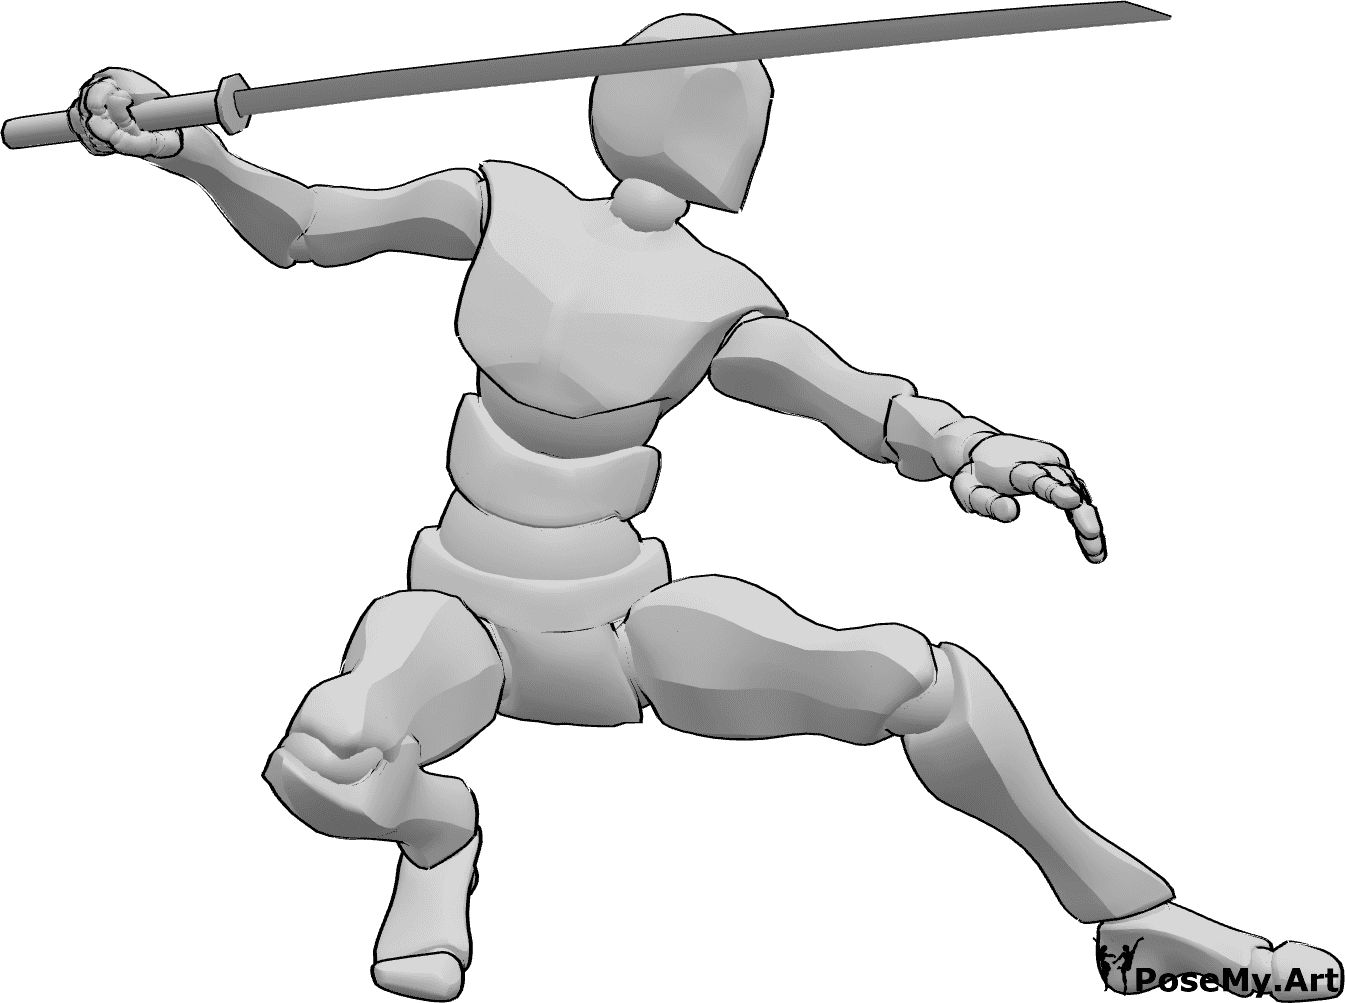 Referência de poses- Postura de agachamento segurando a katana - Homem está agachado e segura uma katana na mão direita